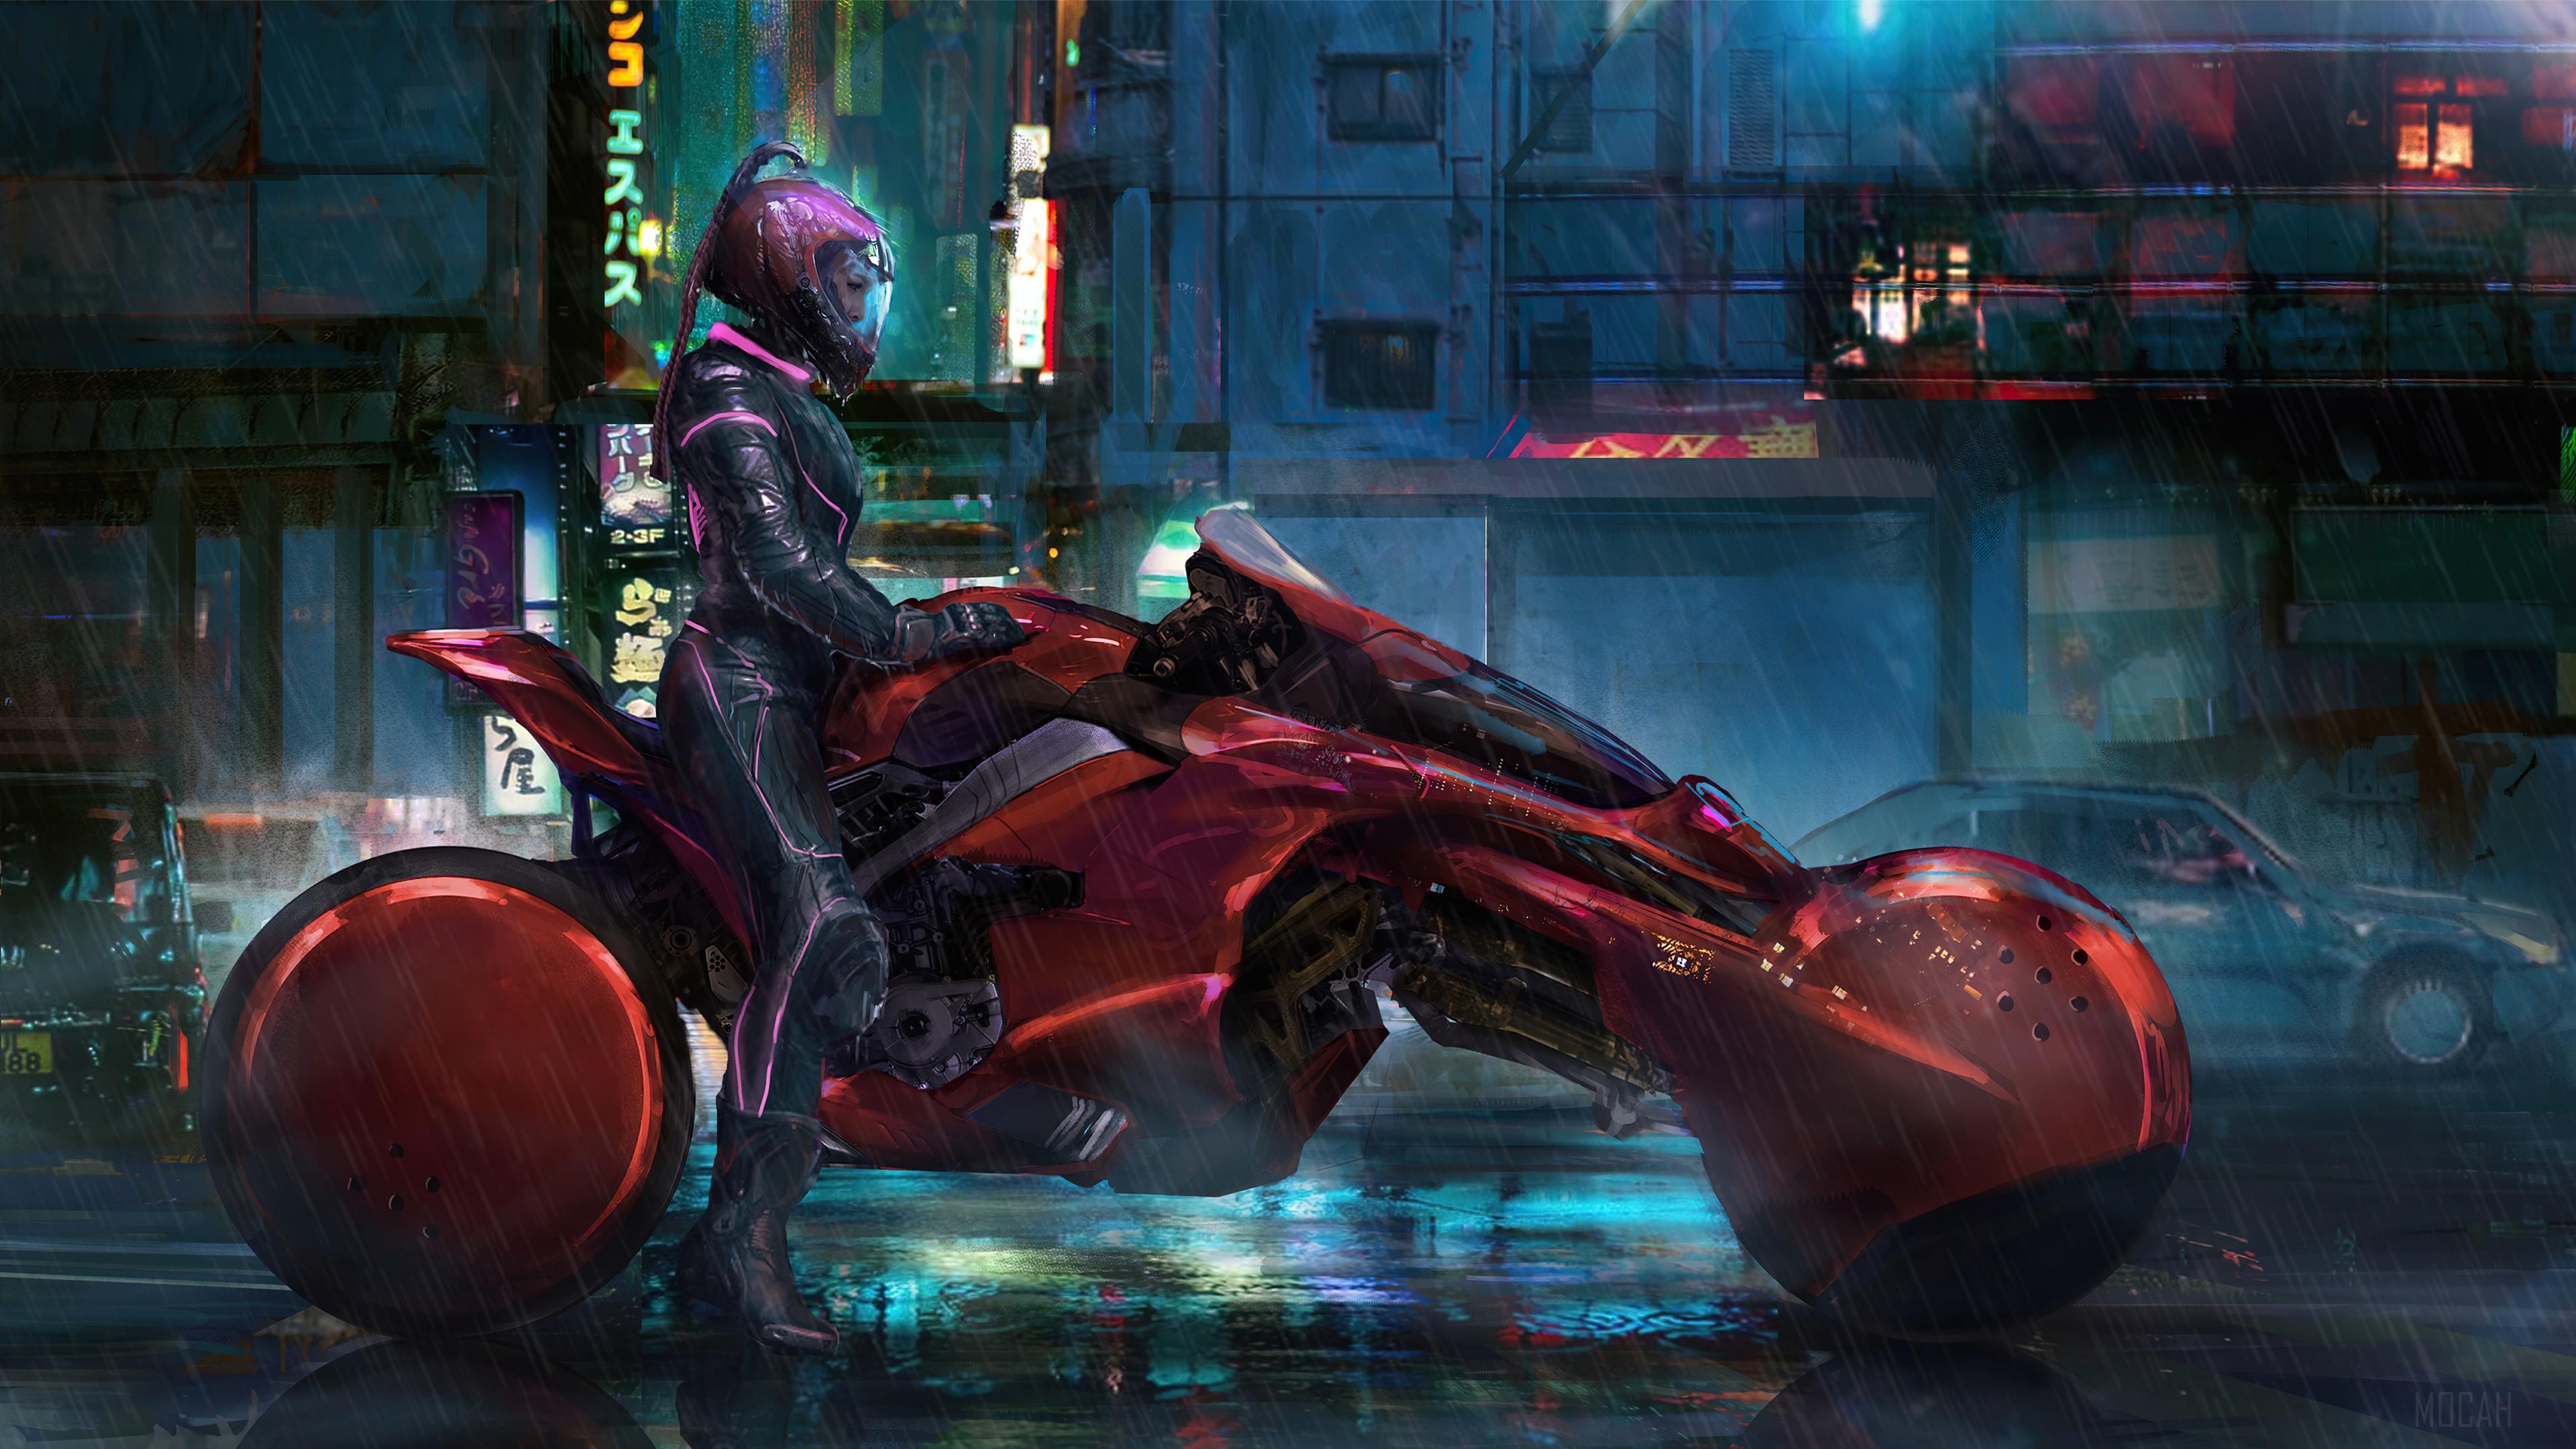 HD wallpaper, Motorcycle, Cyberpunk, Girls, Science Fiction 4K, Motorbike, Sci Fi